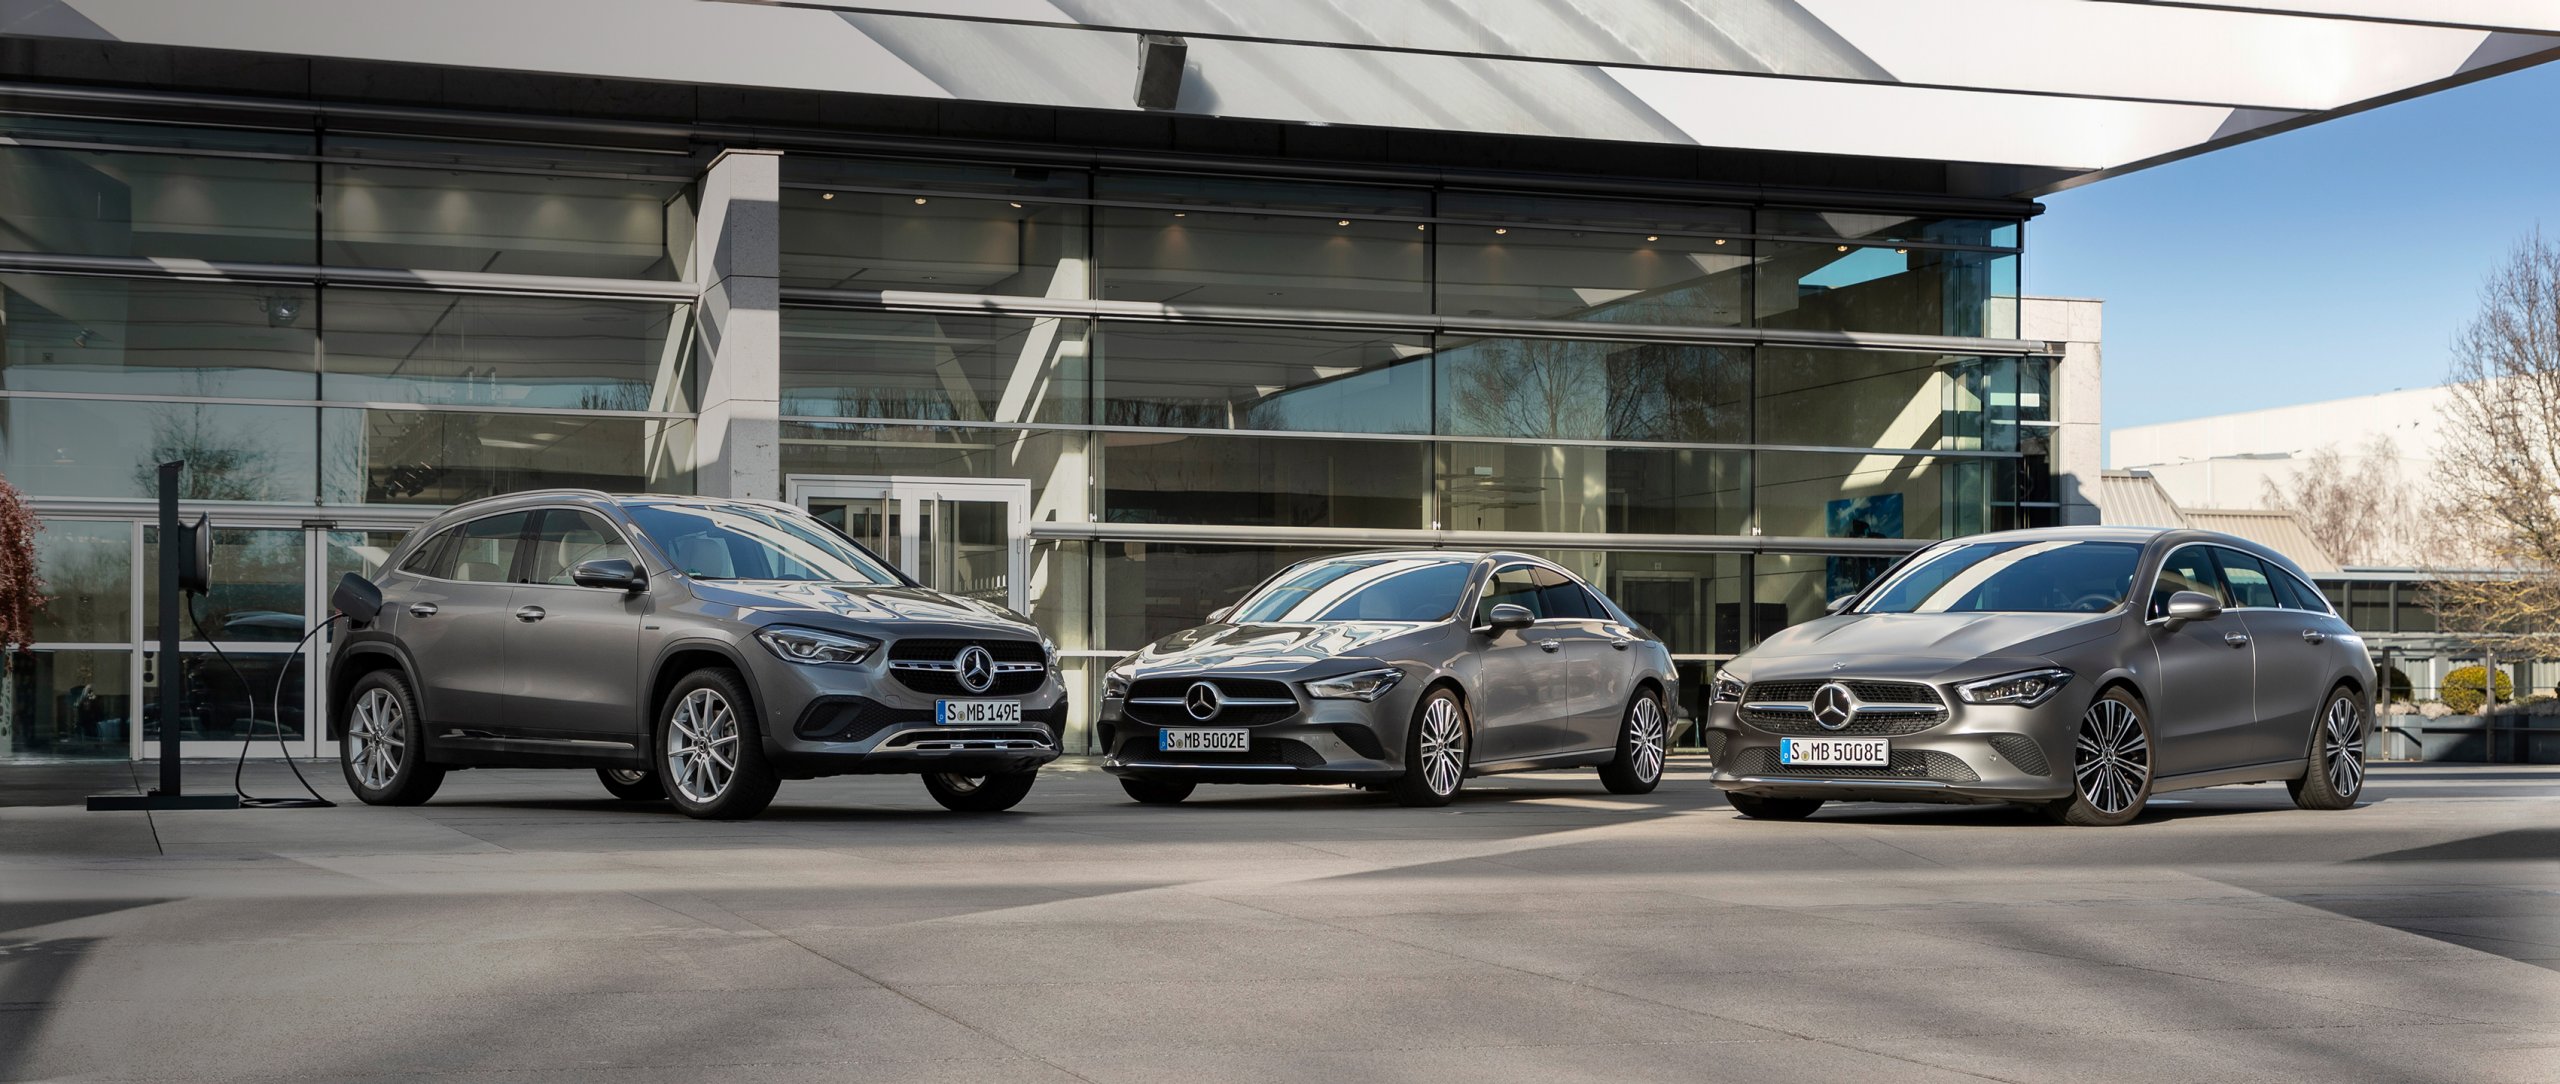 Семейство компактных автомобилей Mercedes-Benz дополнено тремя моделями с EQ Power